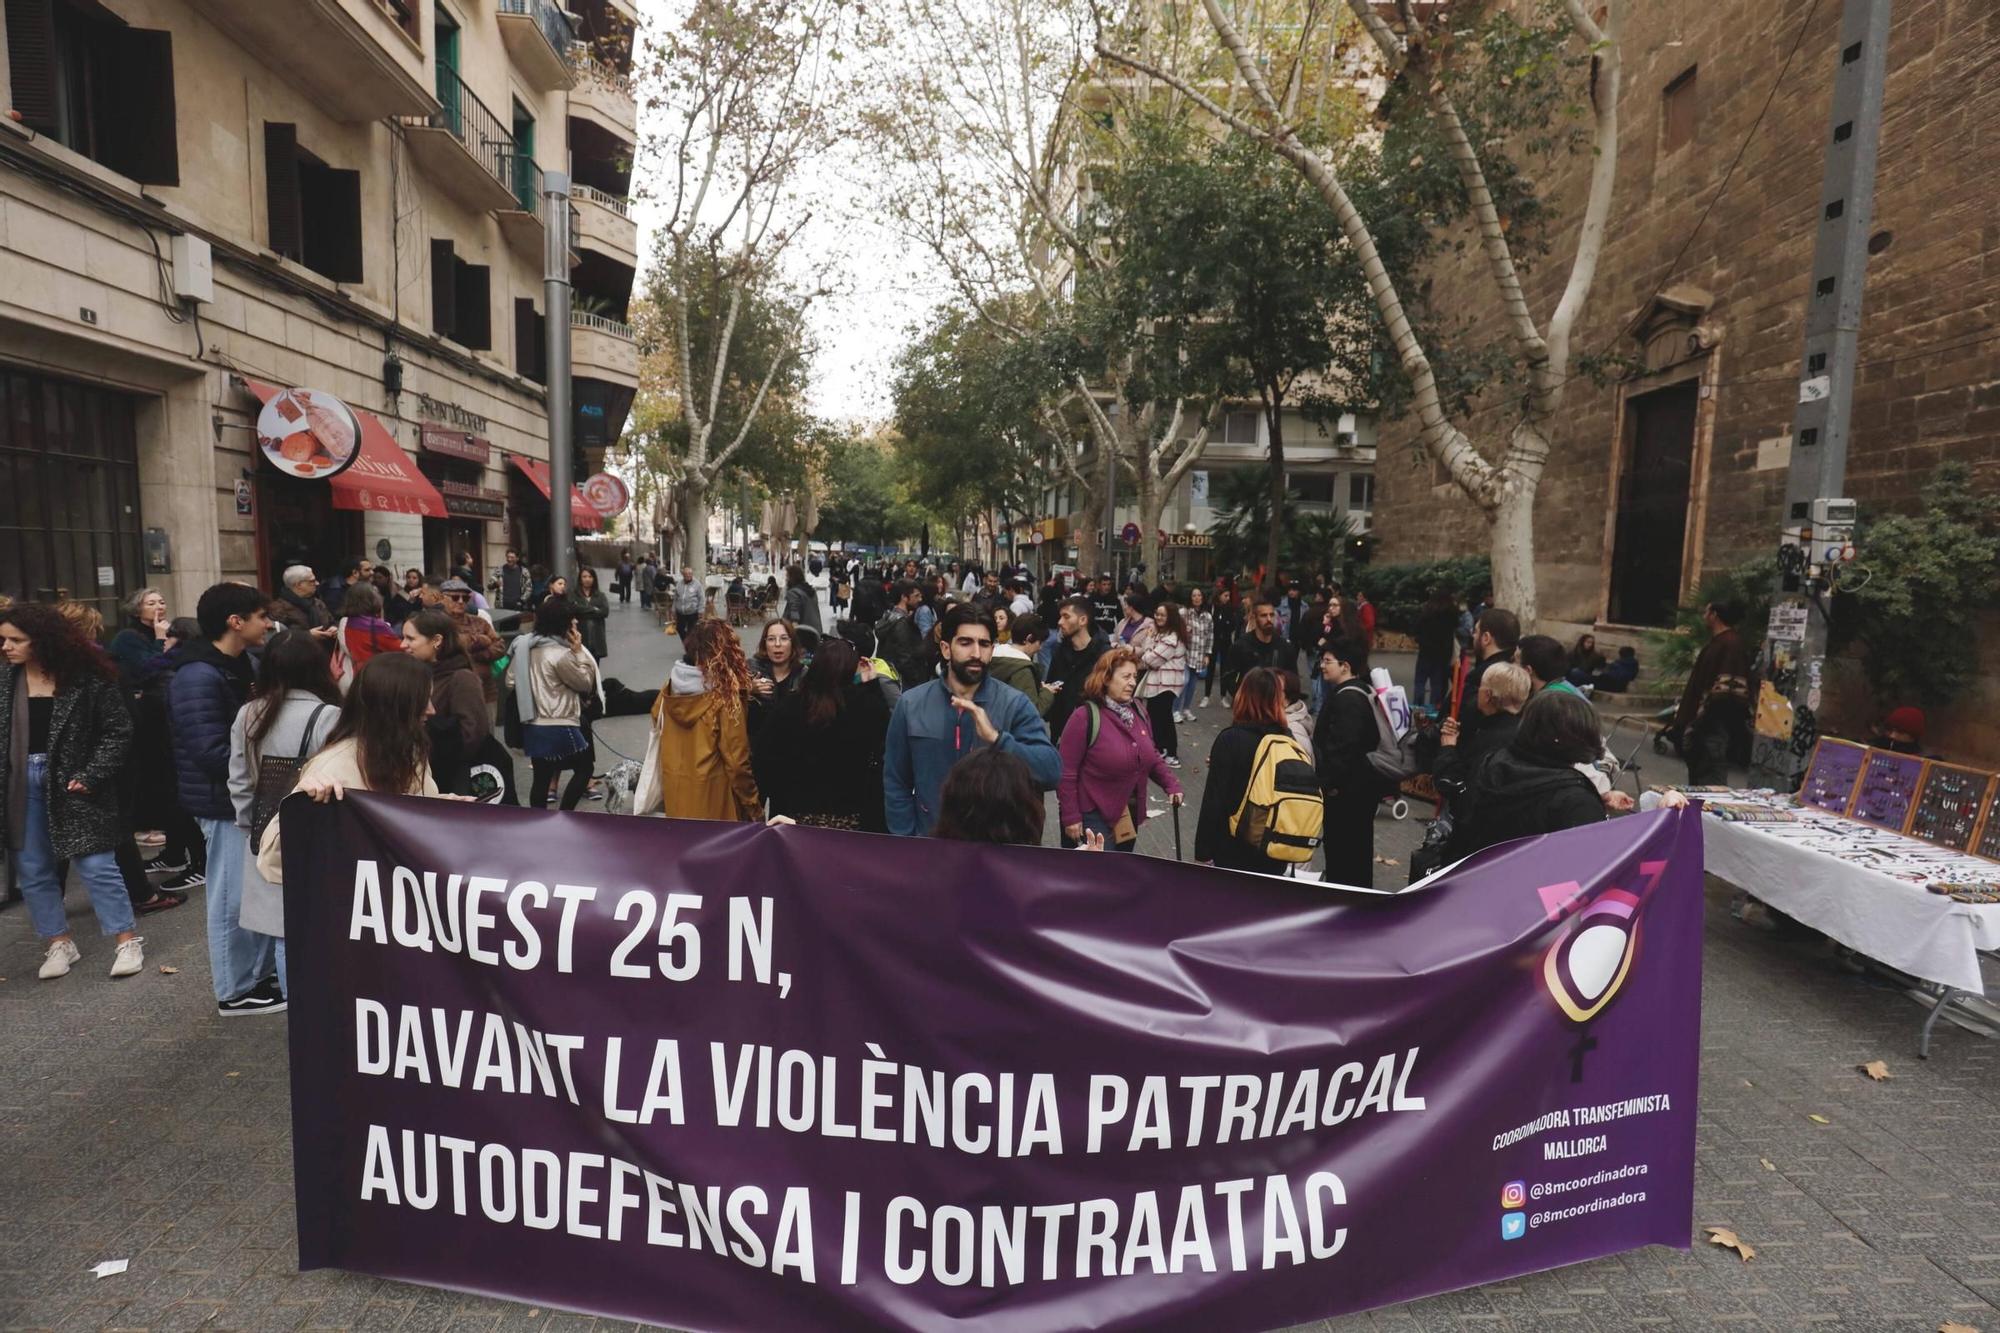 25N en Mallorca: La Coordinadora Transfeminista recorre Palma contra la violencia patriarcal